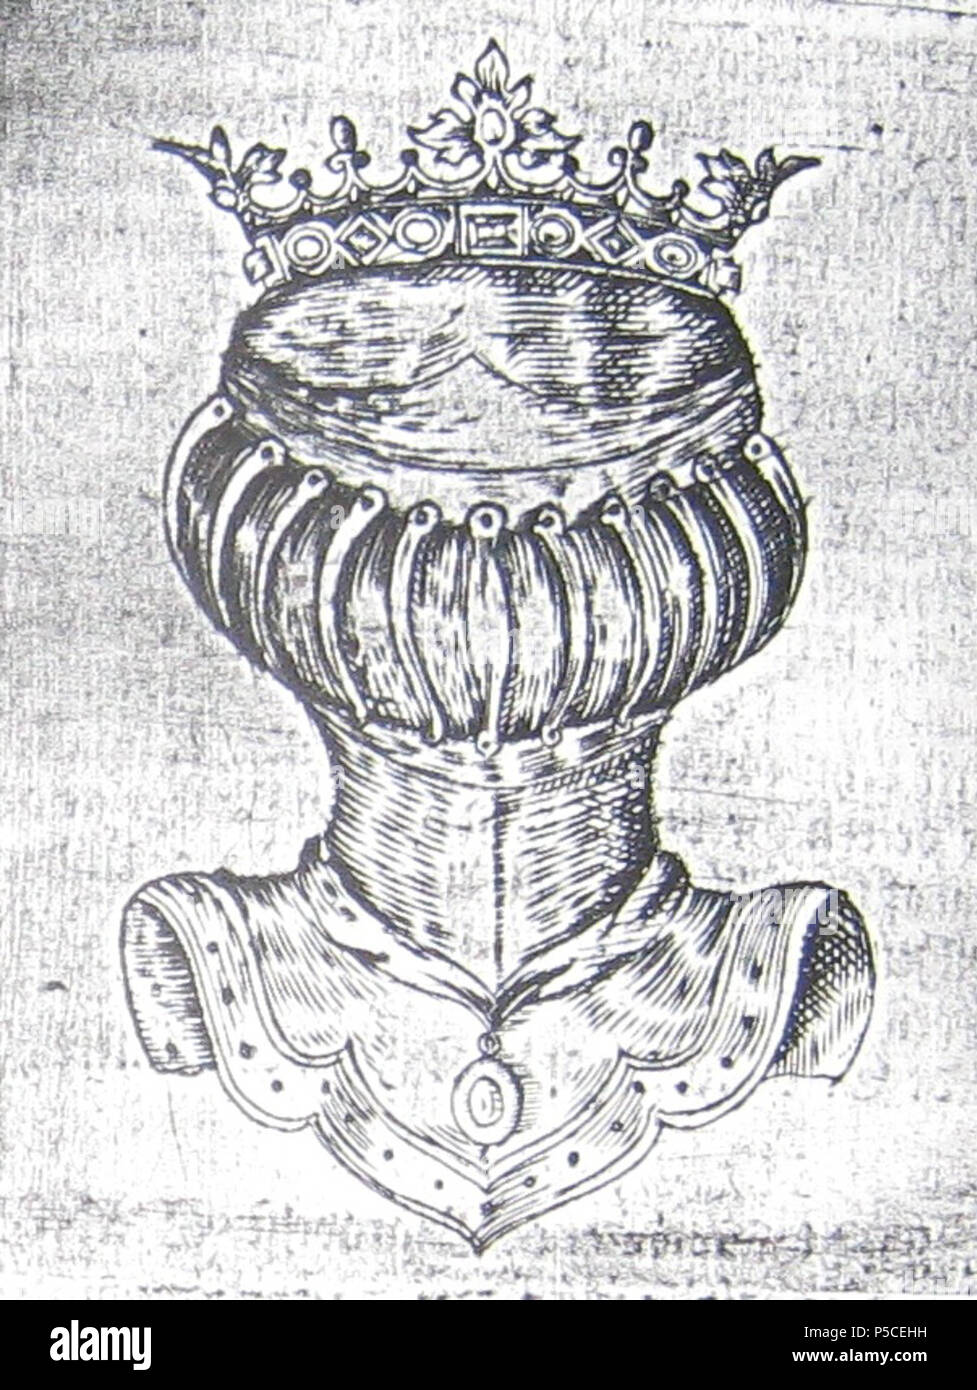 N/A. English : barre Dano-norvégienne et couronne de compte. 25 mai 1671. Gouvernement danois 412 Count Dano-norvégienne Helm Coronet Banque D'Images